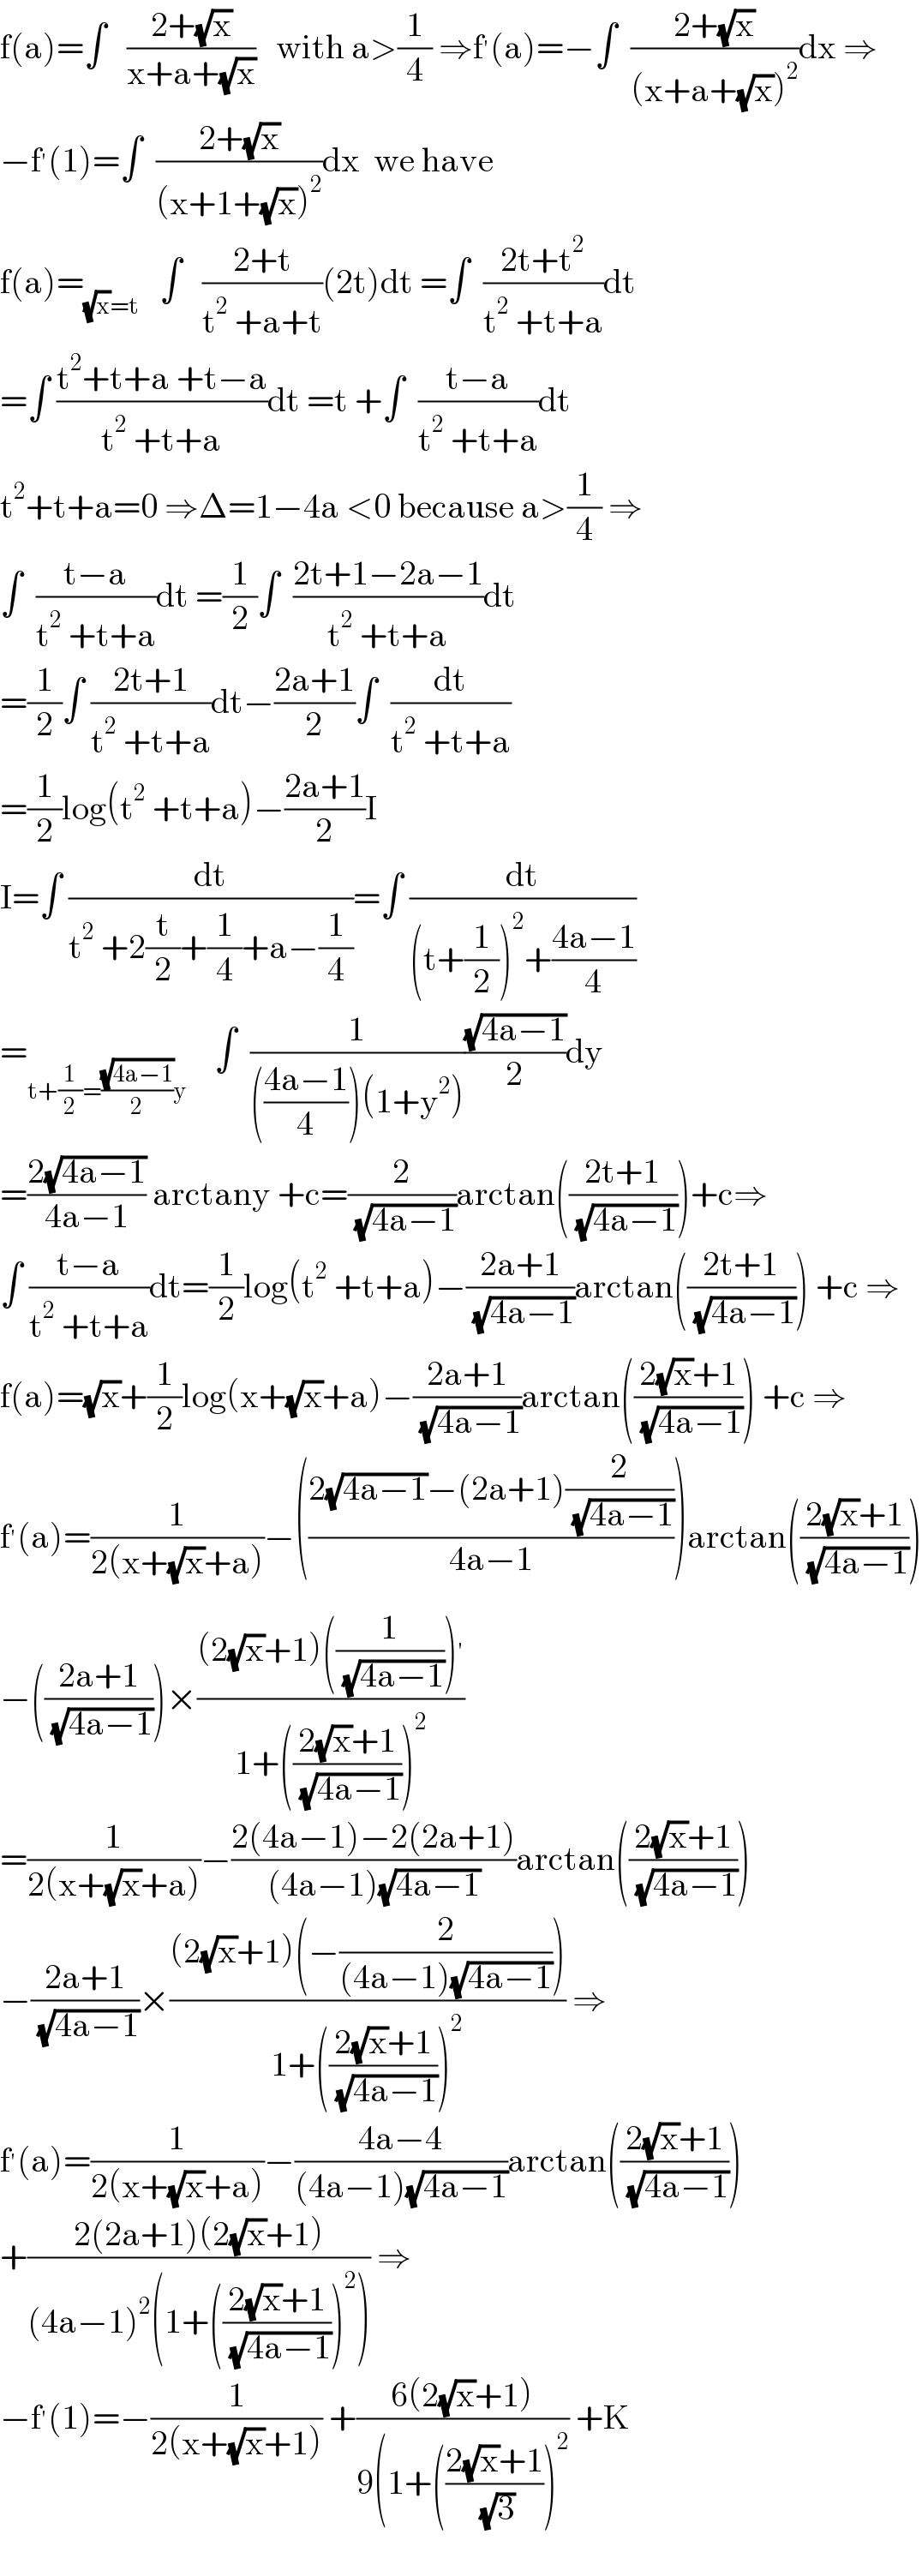 f(a)=∫   ((2+(√x))/(x+a+(√x)))   with a>(1/4) ⇒f^′ (a)=−∫  ((2+(√x))/((x+a+(√x))^2 ))dx ⇒  −f^′ (1)=∫  ((2+(√x))/((x+1+(√x))^2 ))dx  we have  f(a)=_((√x)=t)    ∫   ((2+t)/(t^2  +a+t))(2t)dt =∫  ((2t+t^2 )/(t^2  +t+a))dt  =∫ ((t^2 +t+a +t−a)/(t^2  +t+a))dt =t +∫  ((t−a)/(t^2  +t+a))dt  t^2 +t+a=0 ⇒Δ=1−4a <0 because a>(1/4) ⇒  ∫  ((t−a)/(t^2  +t+a))dt =(1/2)∫  ((2t+1−2a−1)/(t^2  +t+a))dt  =(1/2)∫ ((2t+1)/(t^2  +t+a))dt−((2a+1)/2)∫  (dt/(t^2  +t+a))  =(1/2)log(t^2  +t+a)−((2a+1)/2)I  I=∫ (dt/(t^2  +2(t/2)+(1/4)+a−(1/4)))=∫ (dt/((t+(1/2))^2 +((4a−1)/4)))  =_(t+(1/2)=((√(4a−1))/2)y)     ∫  (1/((((4a−1)/4))(1+y^2 )))((√(4a−1))/2)dy  =((2(√(4a−1)))/(4a−1)) arctany +c=(2/( (√(4a−1))))arctan(((2t+1)/( (√(4a−1)))))+c⇒  ∫ ((t−a)/(t^2  +t+a))dt=(1/2)log(t^2  +t+a)−((2a+1)/( (√(4a−1))))arctan(((2t+1)/( (√(4a−1))))) +c ⇒  f(a)=(√x)+(1/2)log(x+(√x)+a)−((2a+1)/( (√(4a−1))))arctan(((2(√x)+1)/( (√(4a−1))))) +c ⇒  f^′ (a)=(1/(2(x+(√x)+a)))−(((2(√(4a−1))−(2a+1)(2/( (√(4a−1)))))/(4a−1)))arctan(((2(√x)+1)/( (√(4a−1)))))  −(((2a+1)/( (√(4a−1)))))×(((2(√x)+1)((1/( (√(4a−1)))))^′ )/(1+(((2(√x)+1)/( (√(4a−1)))))^2 ))  =(1/(2(x+(√x)+a)))−((2(4a−1)−2(2a+1))/((4a−1)(√(4a−1))))arctan(((2(√x)+1)/( (√(4a−1)))))  −((2a+1)/( (√(4a−1))))×(((2(√x)+1)(−(2/((4a−1)(√(4a−1))))))/(1+(((2(√x)+1)/( (√(4a−1)))))^2 )) ⇒  f^′ (a)=(1/(2(x+(√x)+a)))−((4a−4)/((4a−1)(√(4a−1))))arctan(((2(√x)+1)/( (√(4a−1)))))  +((2(2a+1)(2(√x)+1))/((4a−1)^2 (1+(((2(√x)+1)/( (√(4a−1)))))^2 ))) ⇒  −f^′ (1)=−(1/(2(x+(√x)+1))) +((6(2(√x)+1))/(9(1+(((2(√x)+1)/( (√3))))^2 )) +K    